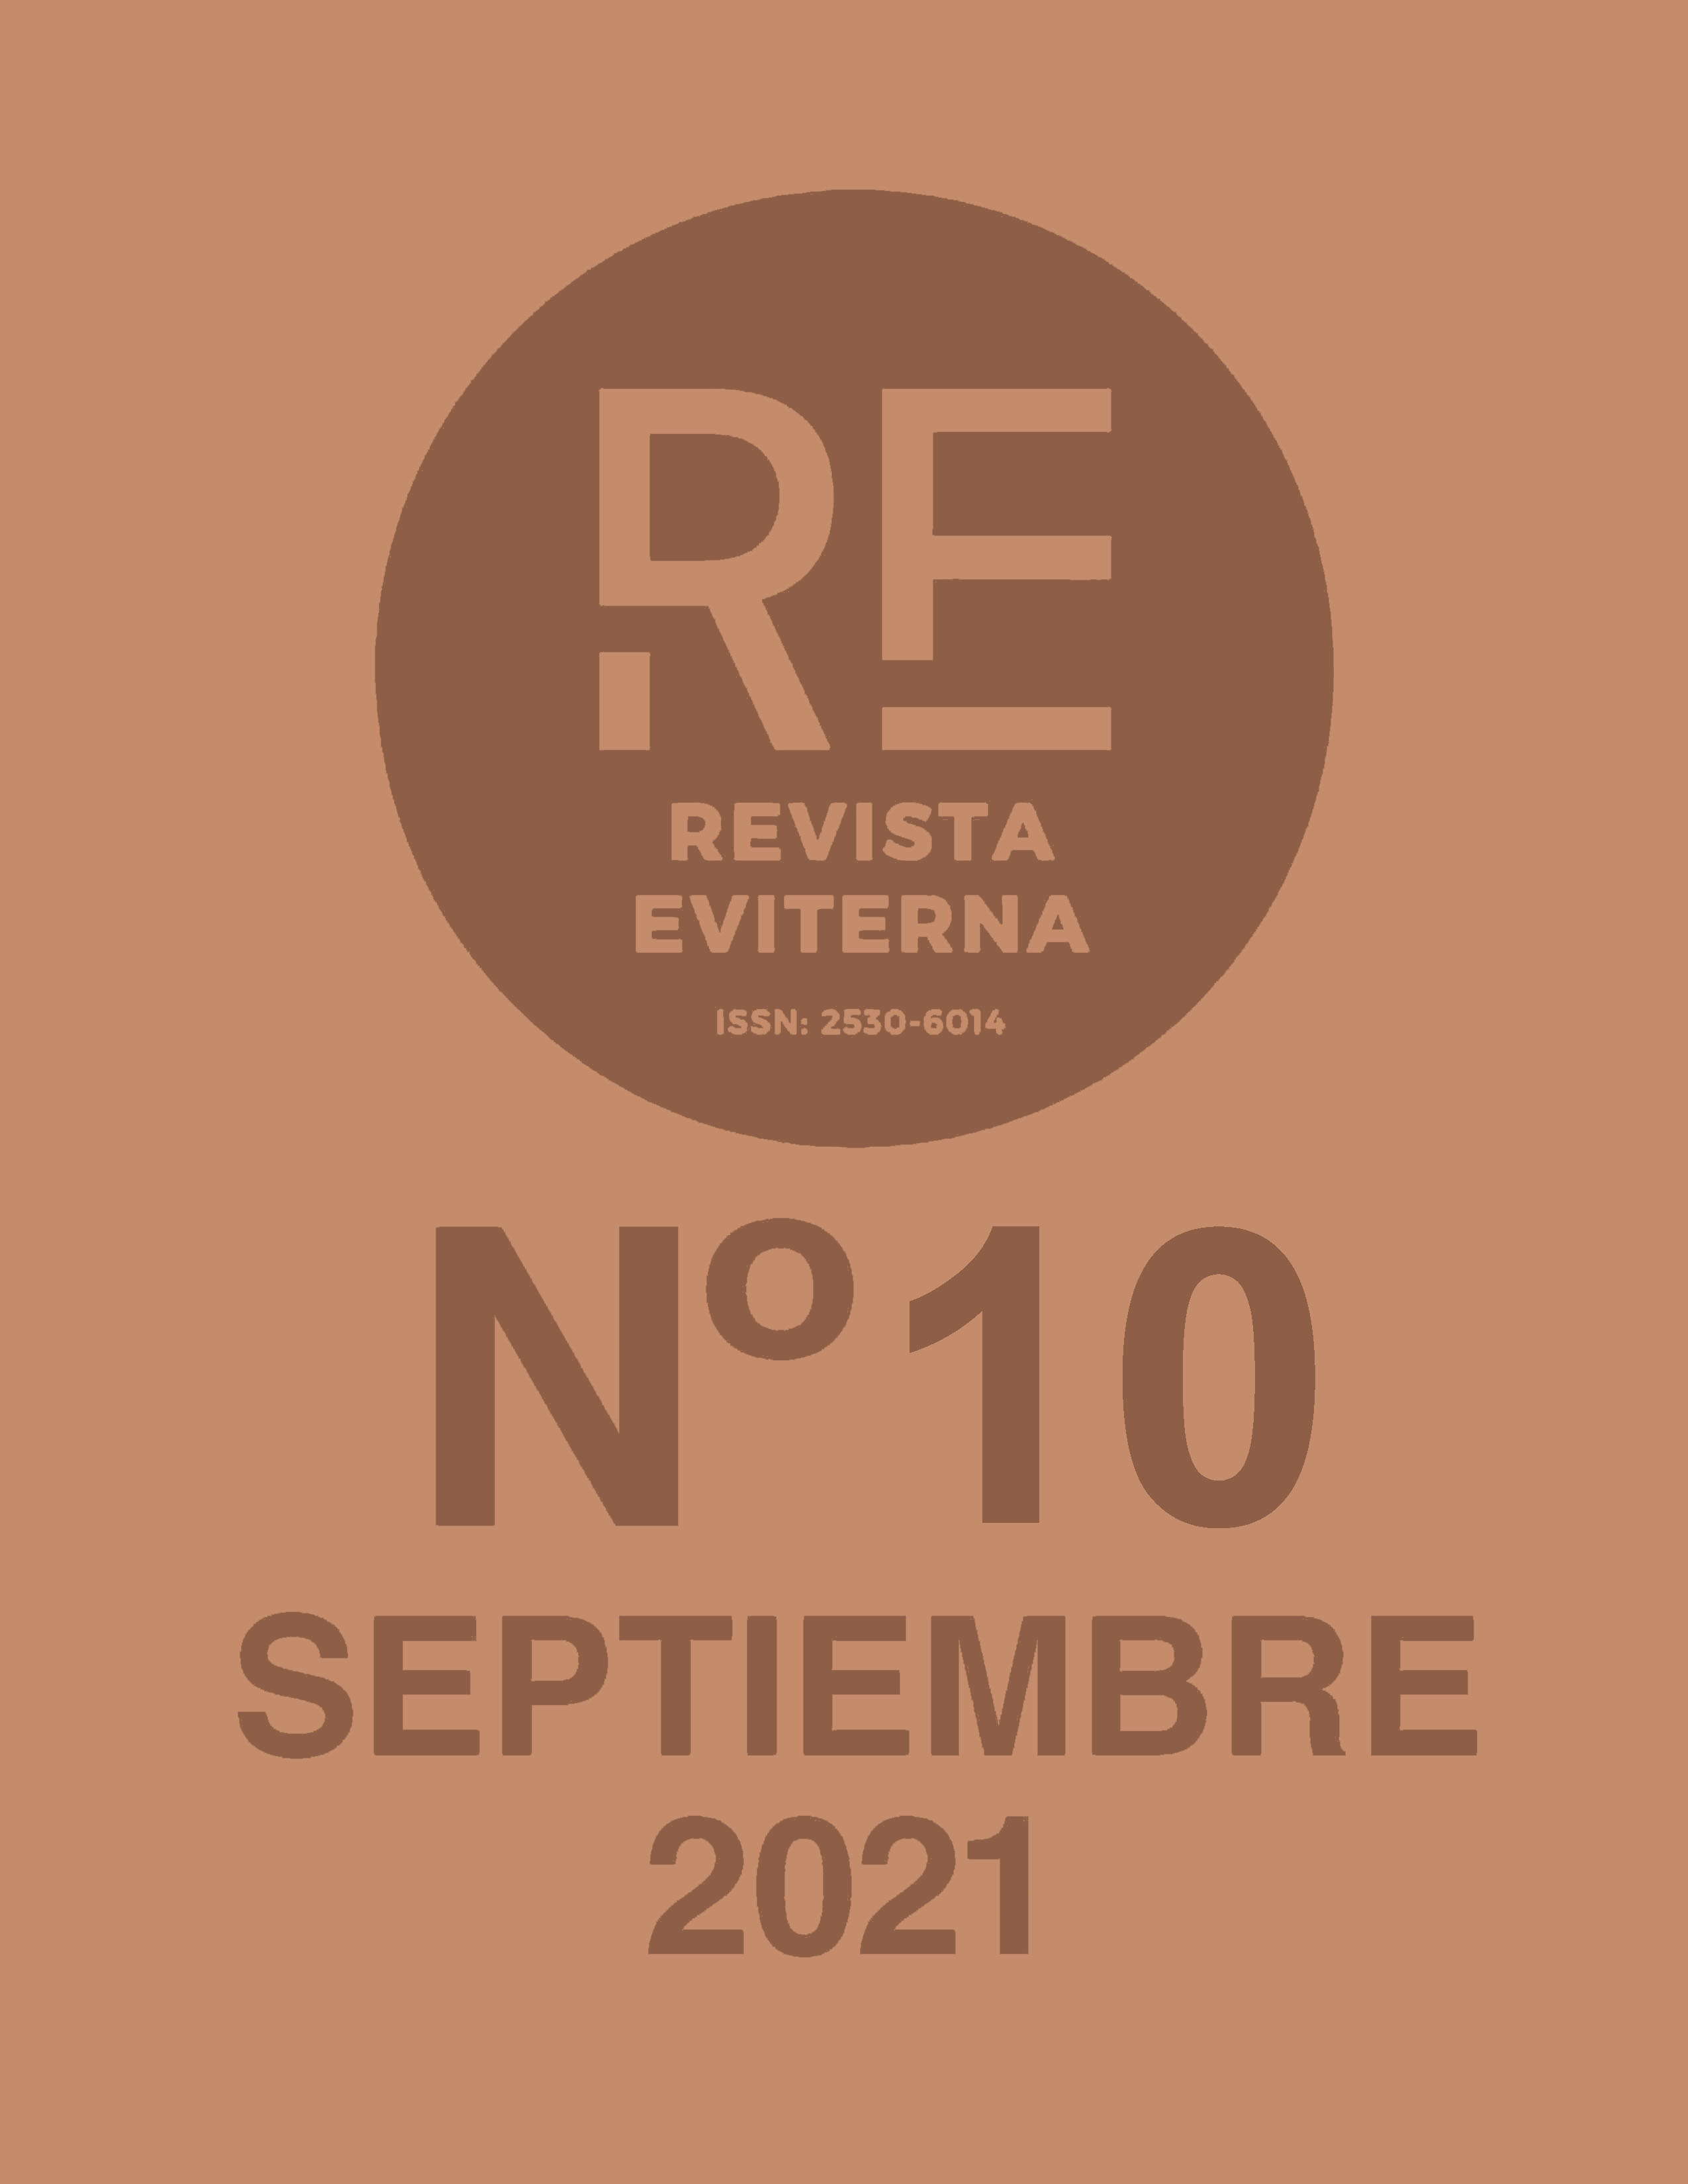 					Ver Núm. 10 (2021): Revista Eviterna Nº 10, septiembre de 2021
				